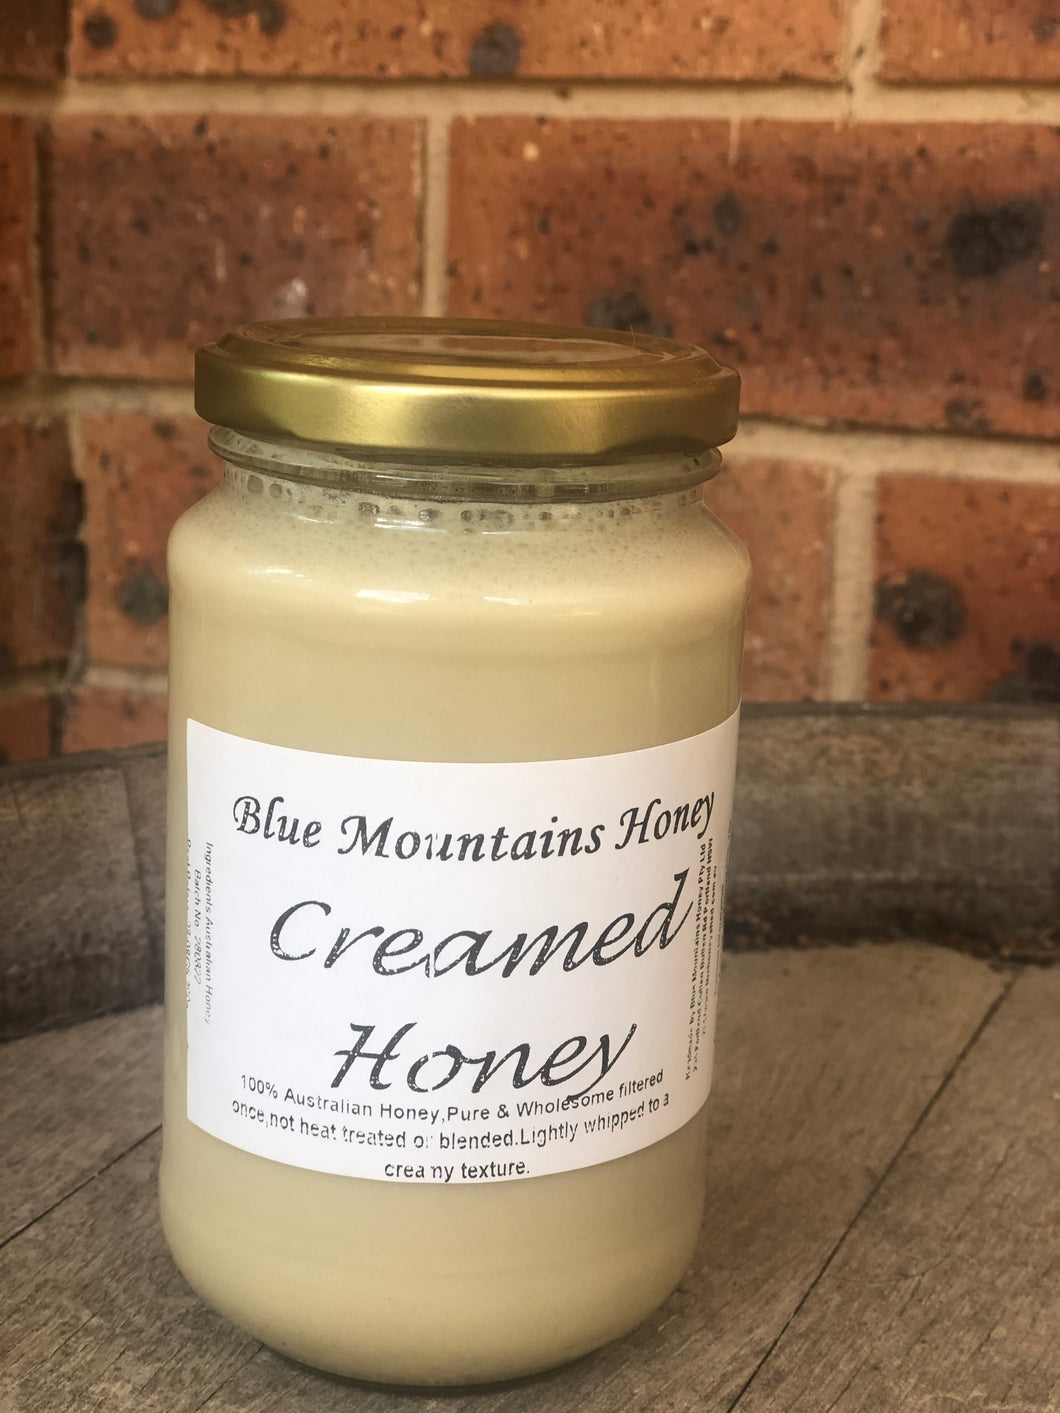 Blue Mountains Honey -390g creamed honey